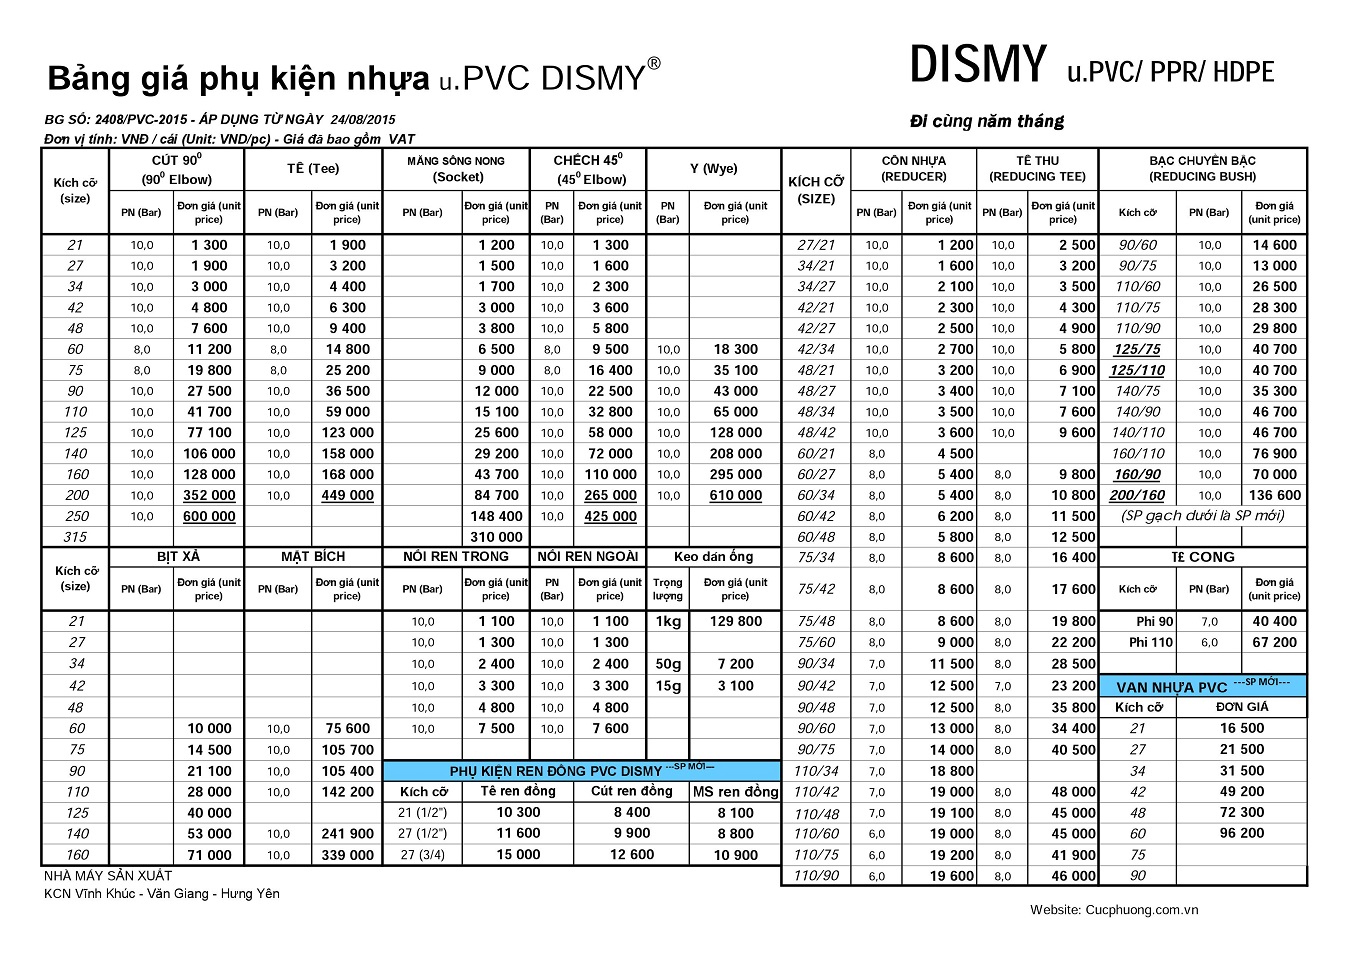 Chi tiết bảng báo giá ống nhựa Dismy 